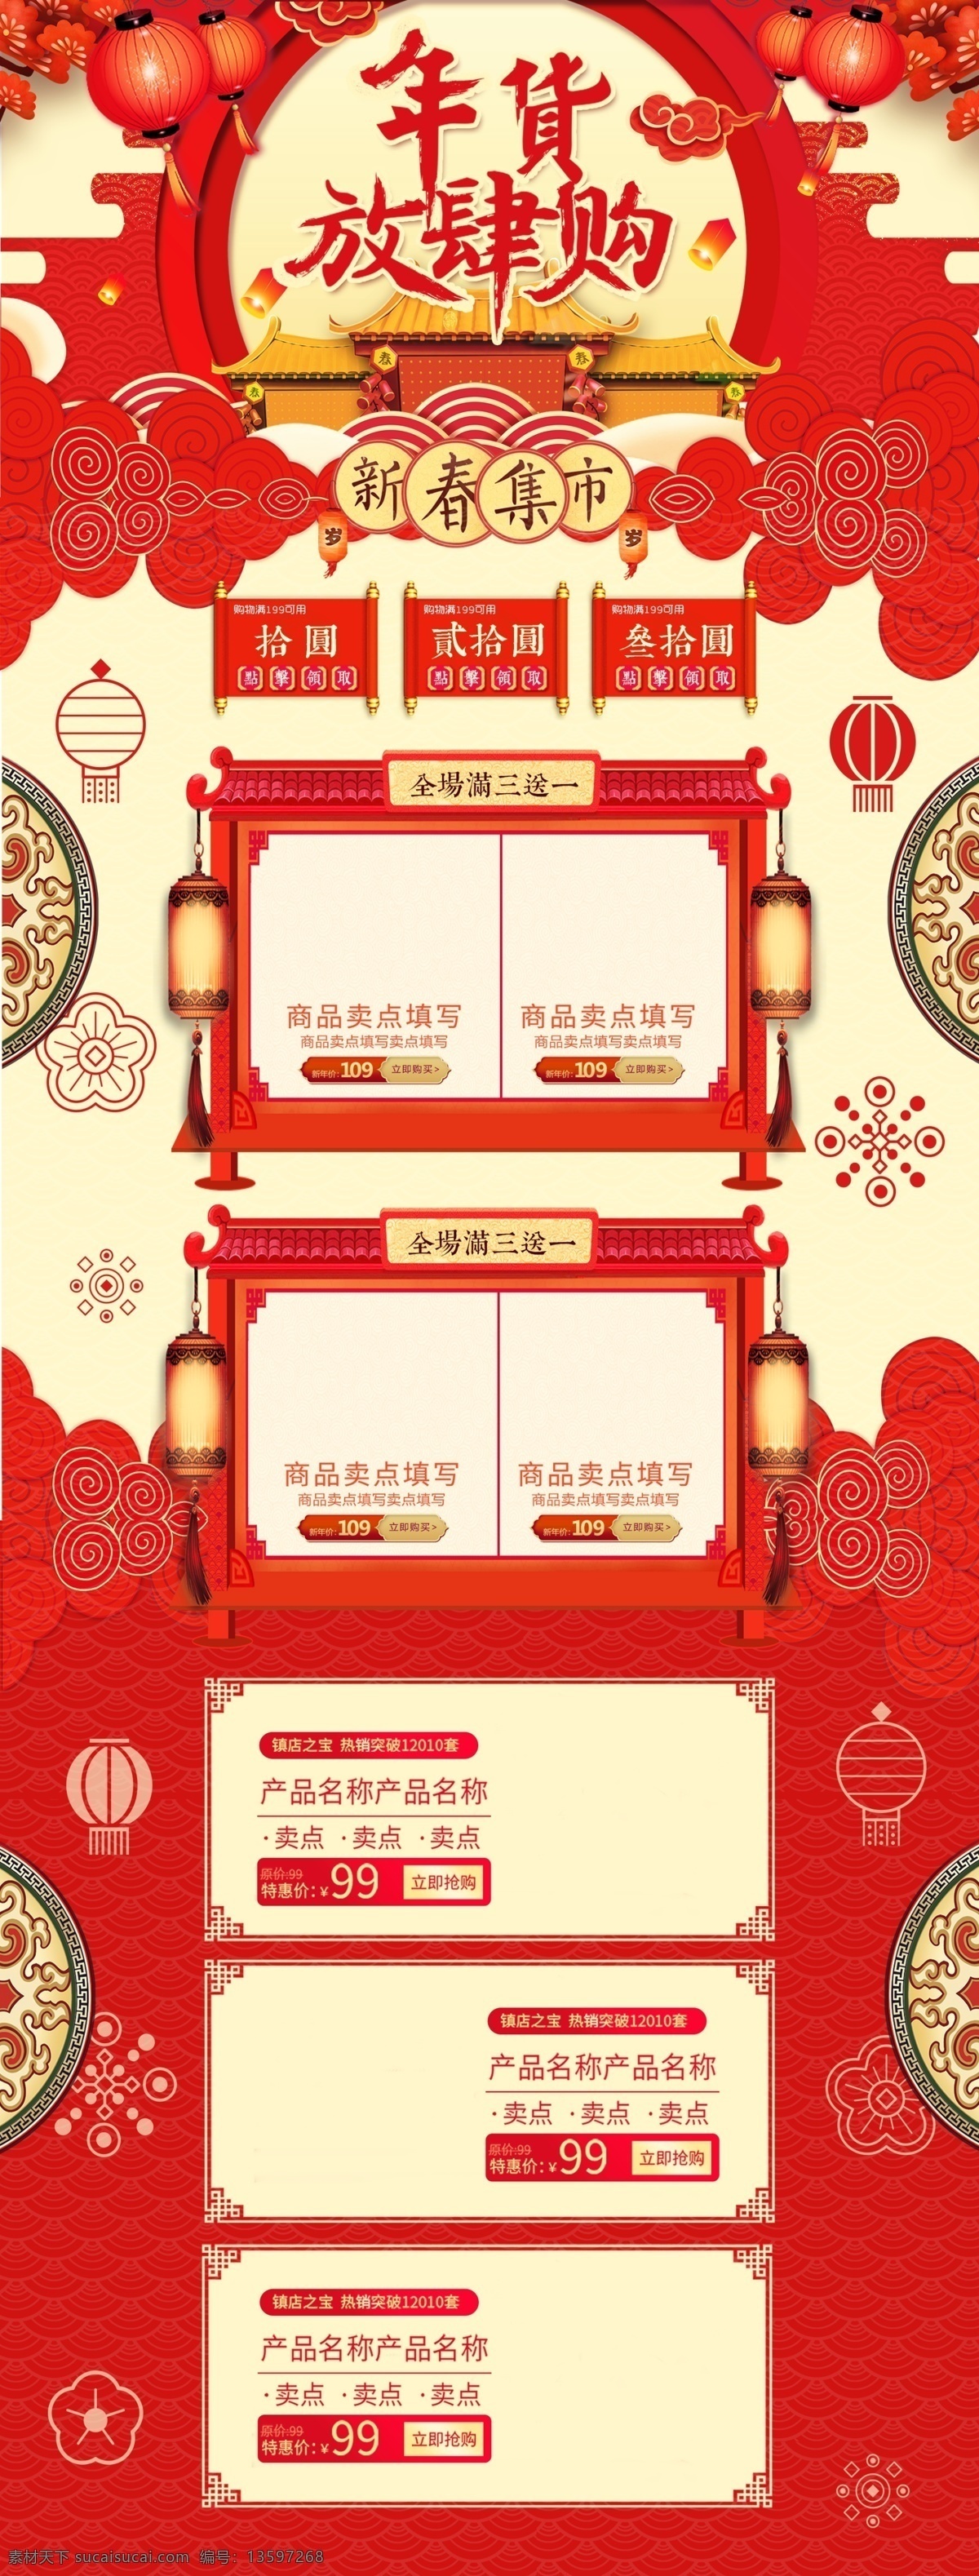 红色 喜庆 中国 风 新春 春节 年货 大街 电商 首页 中国风 2019 猪年 新年 年货节 年货大街 淘宝